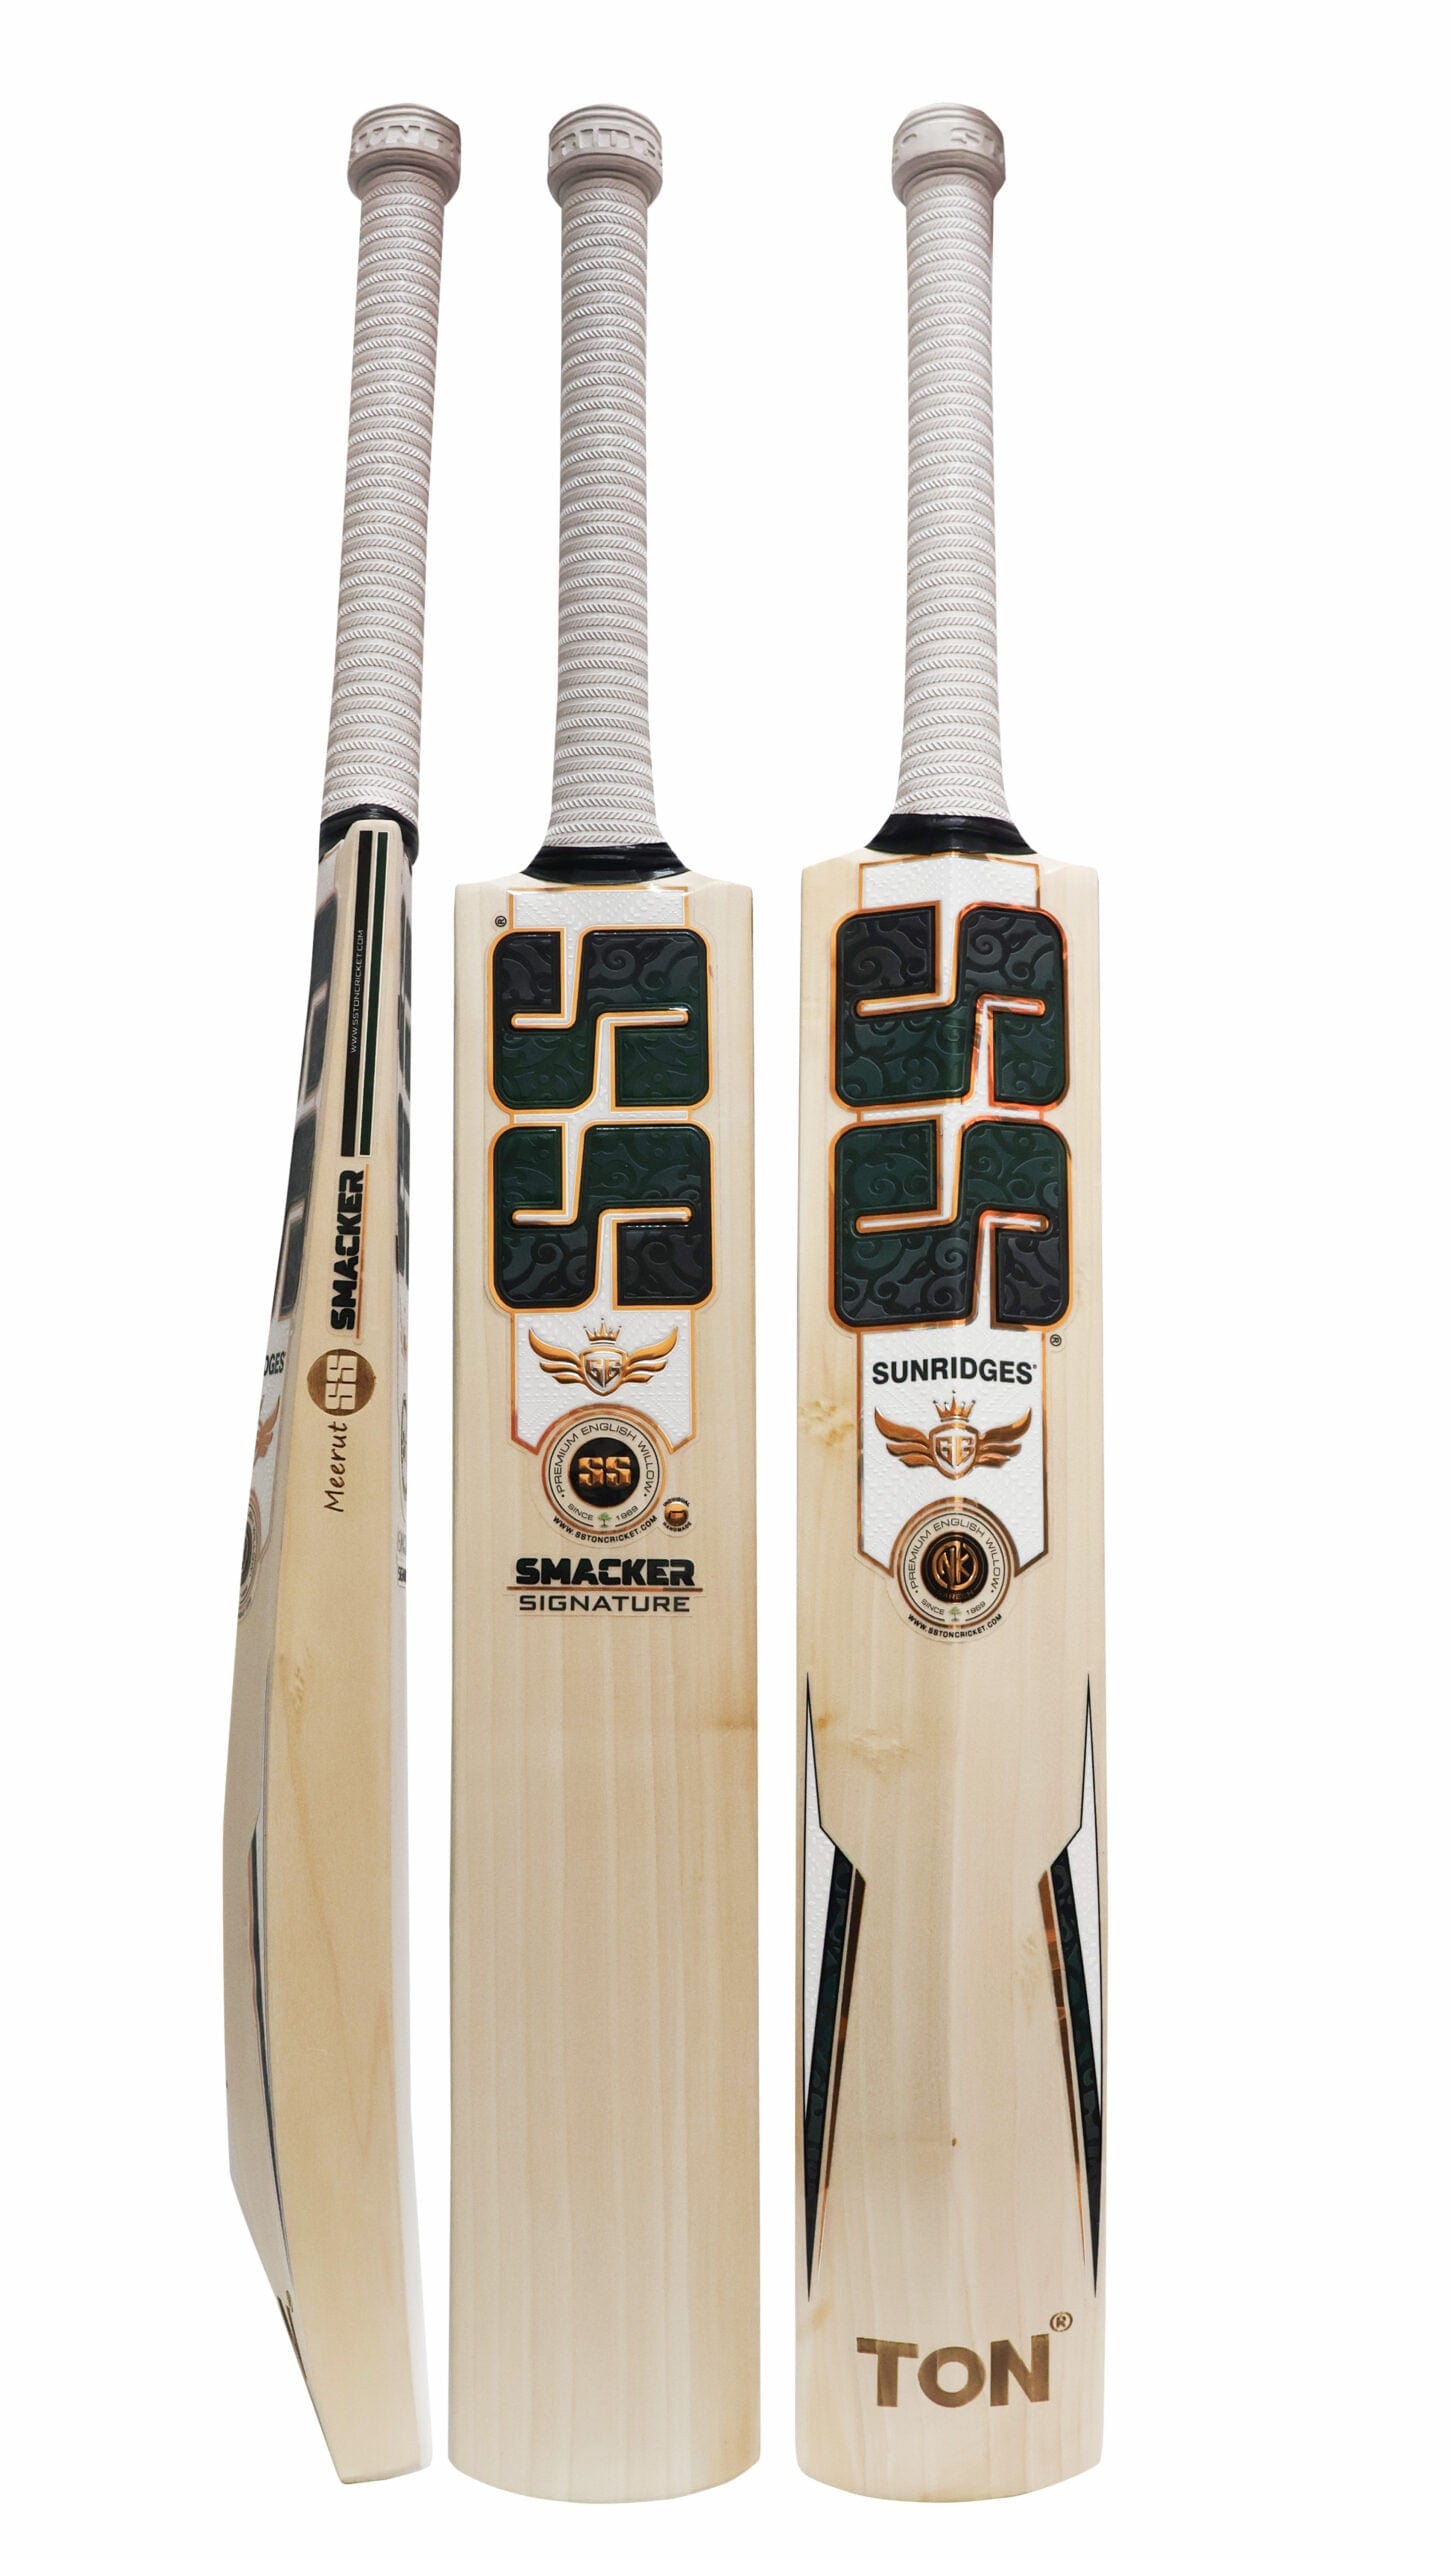 SS Cricket Bats Short Handle / Light 2lbs 8oz - 2lbs 10oz SS GG Smacker Signature Adult Cricket Bat